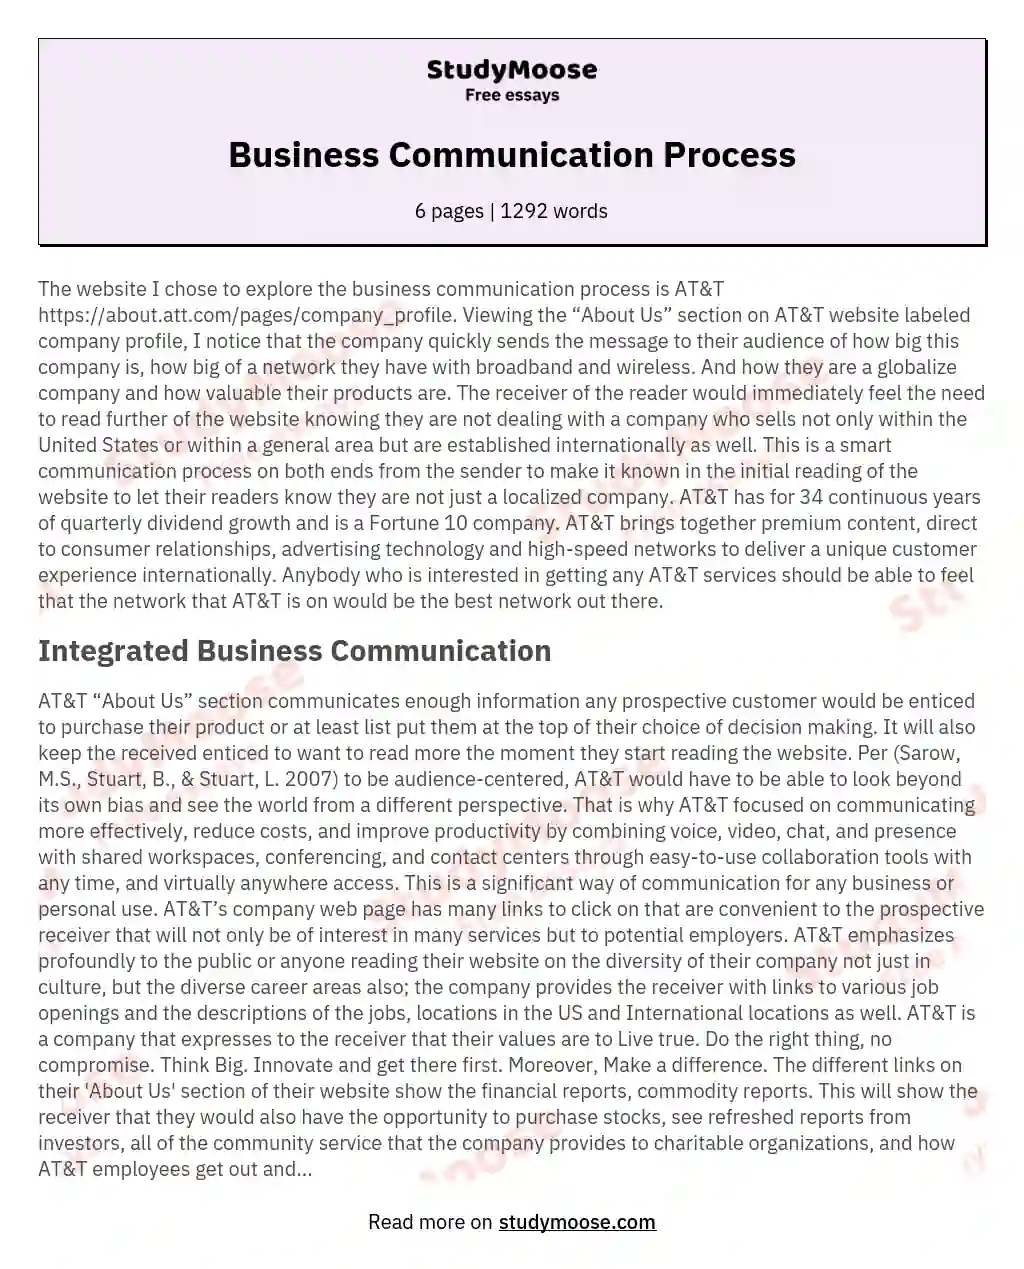 Business Communication Process